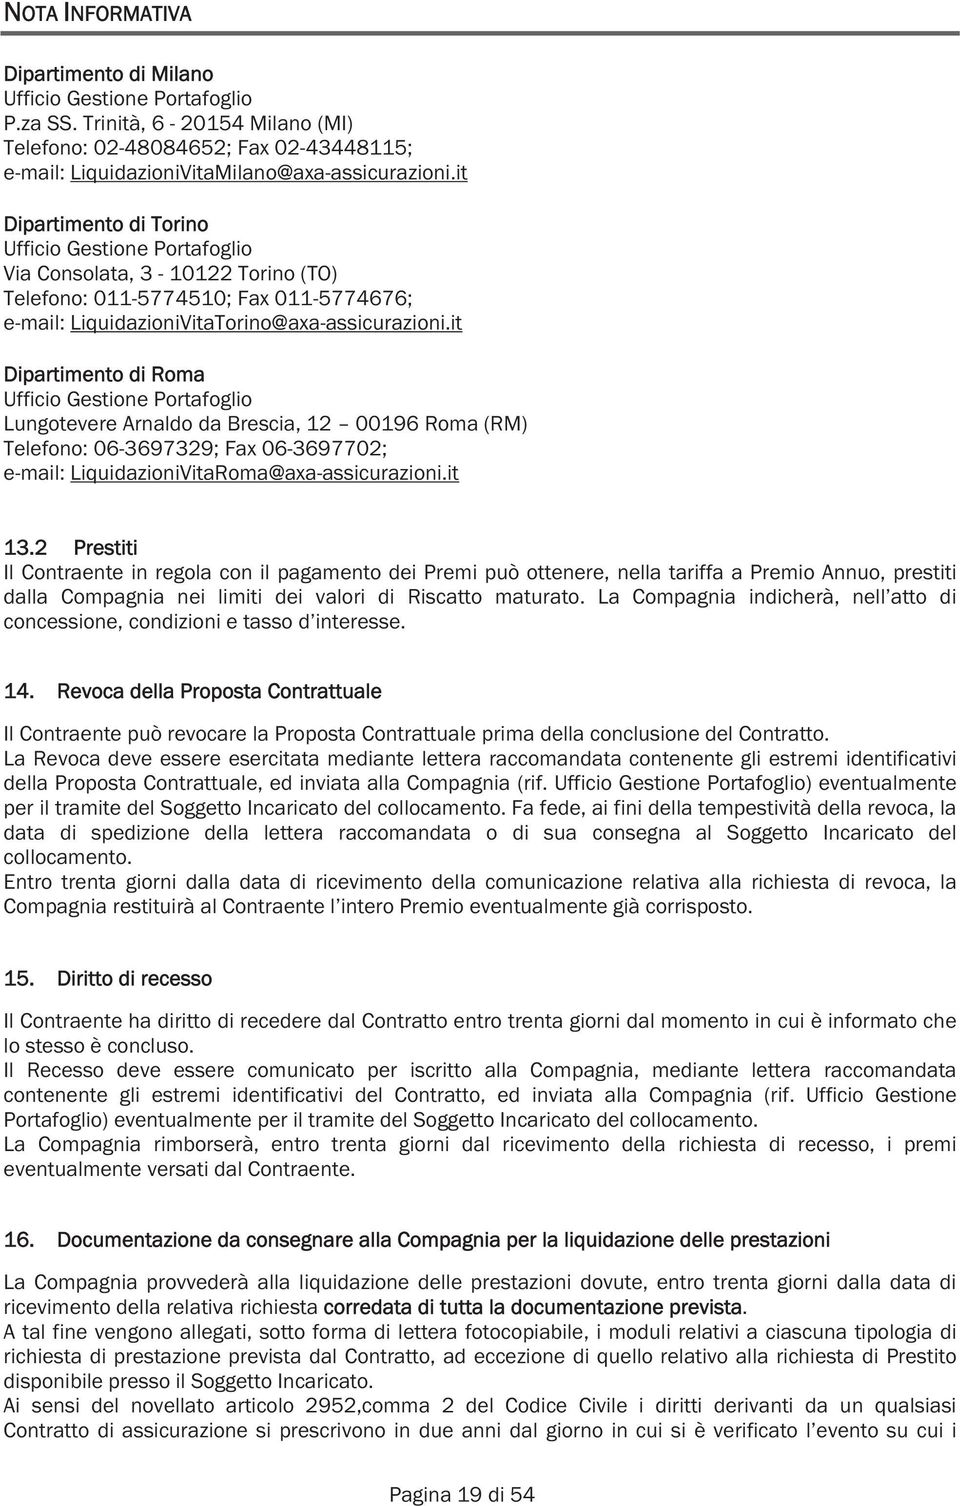 it Dipartimento di Roma Ufficio Gestione Portafoglio Lungotevere Arnaldo da Brescia, 12 00196 Roma (RM) Telefono: 06-3697329; Fax 06-3697702; e-mail: LiquidazioniVitaRoma@axa-assicurazioni.it 13.